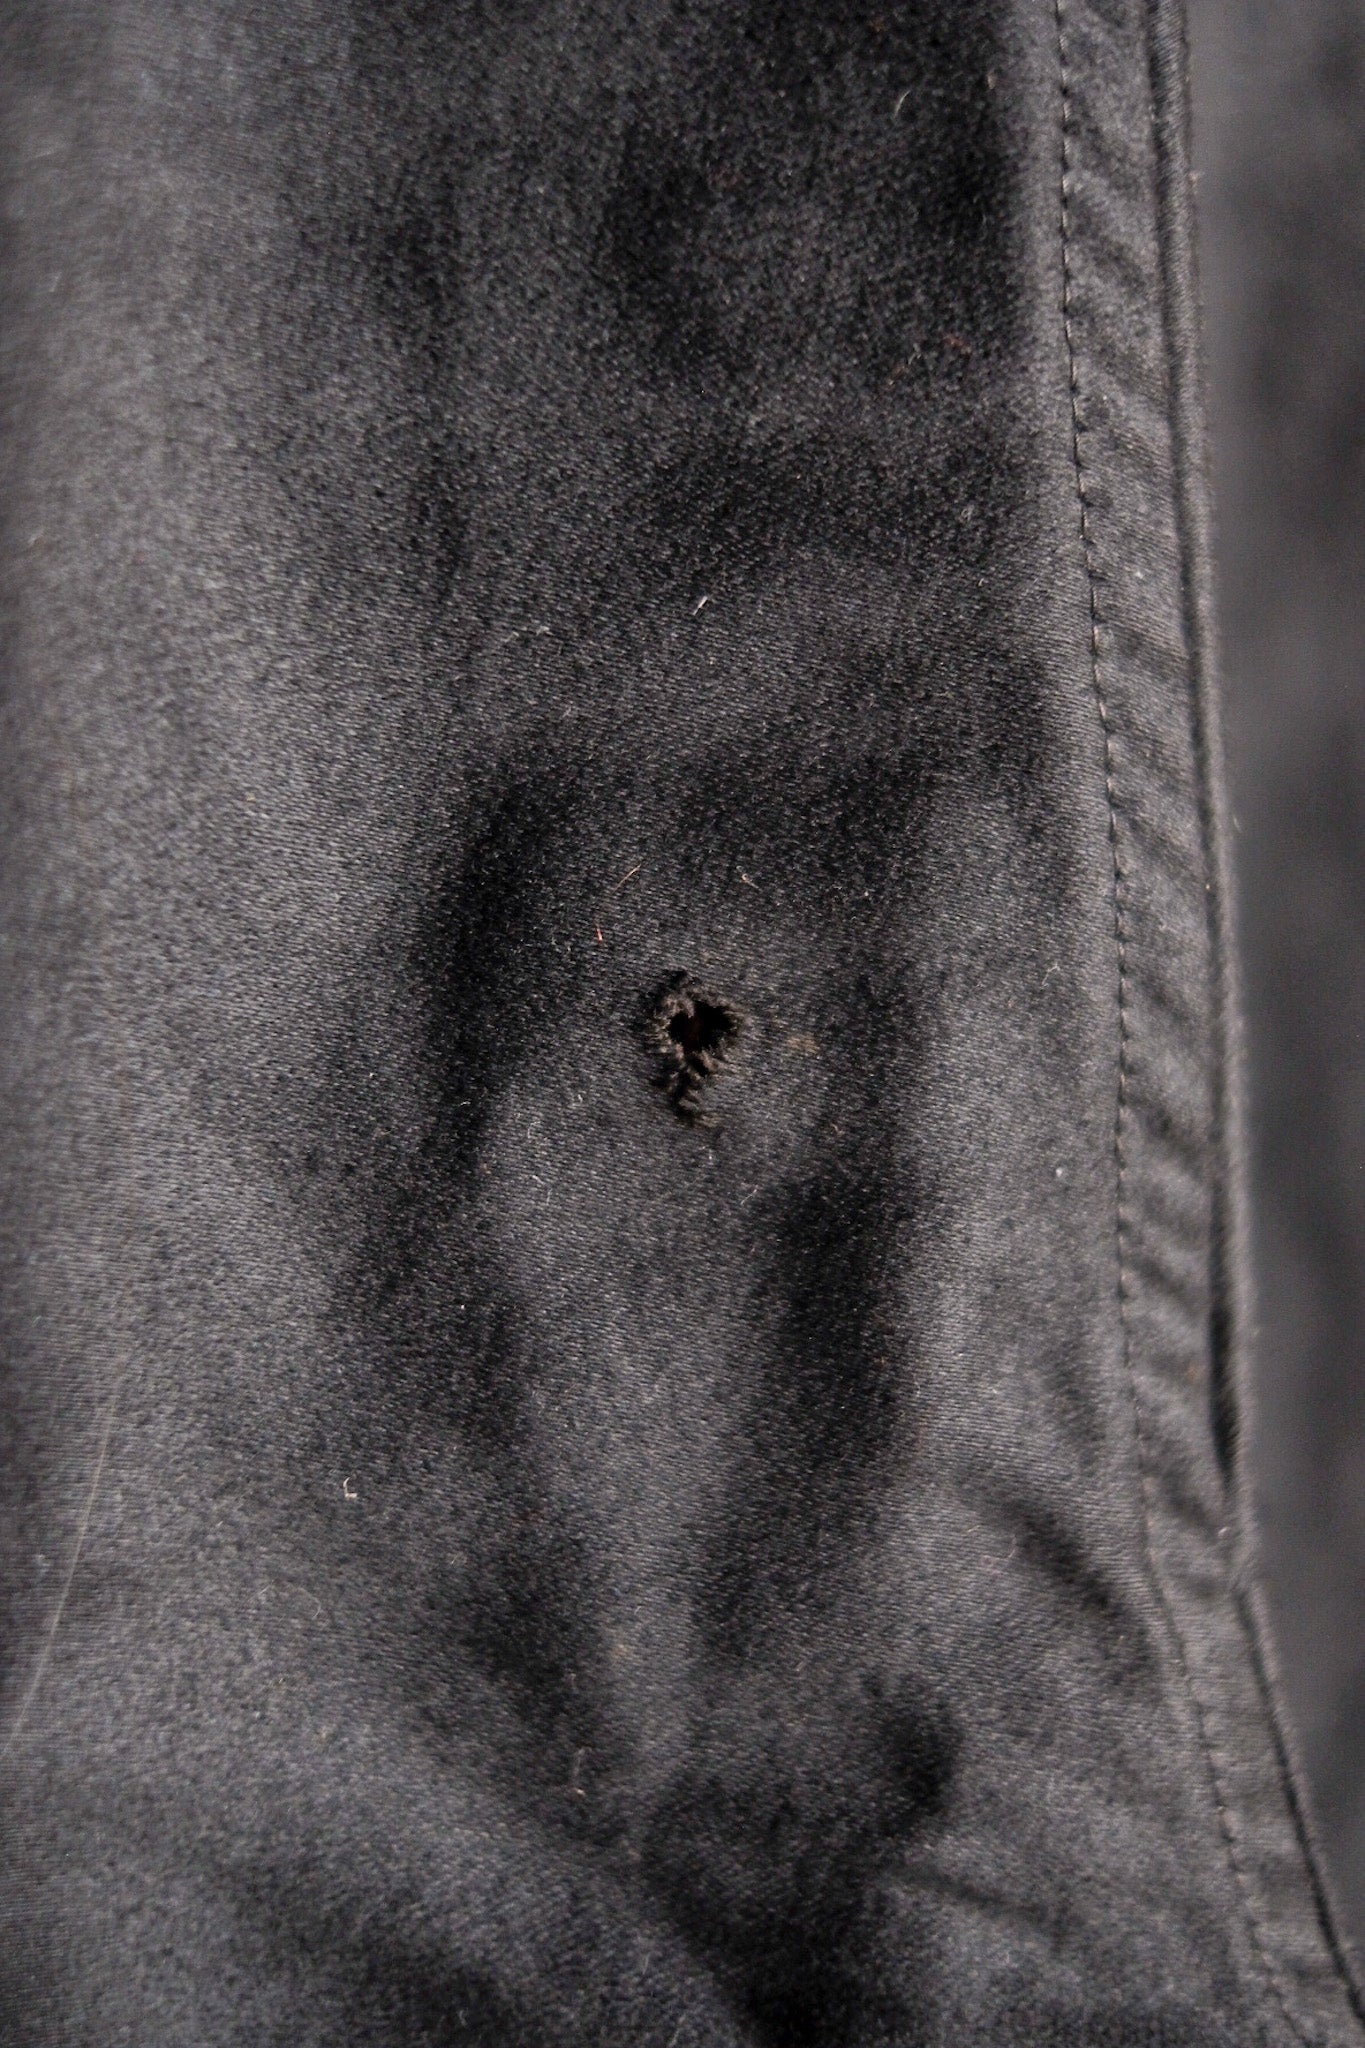 [~ 30's] French Vintage Black Moleskin Work Pants "Le Mont St. Michel" "Dead Stock"